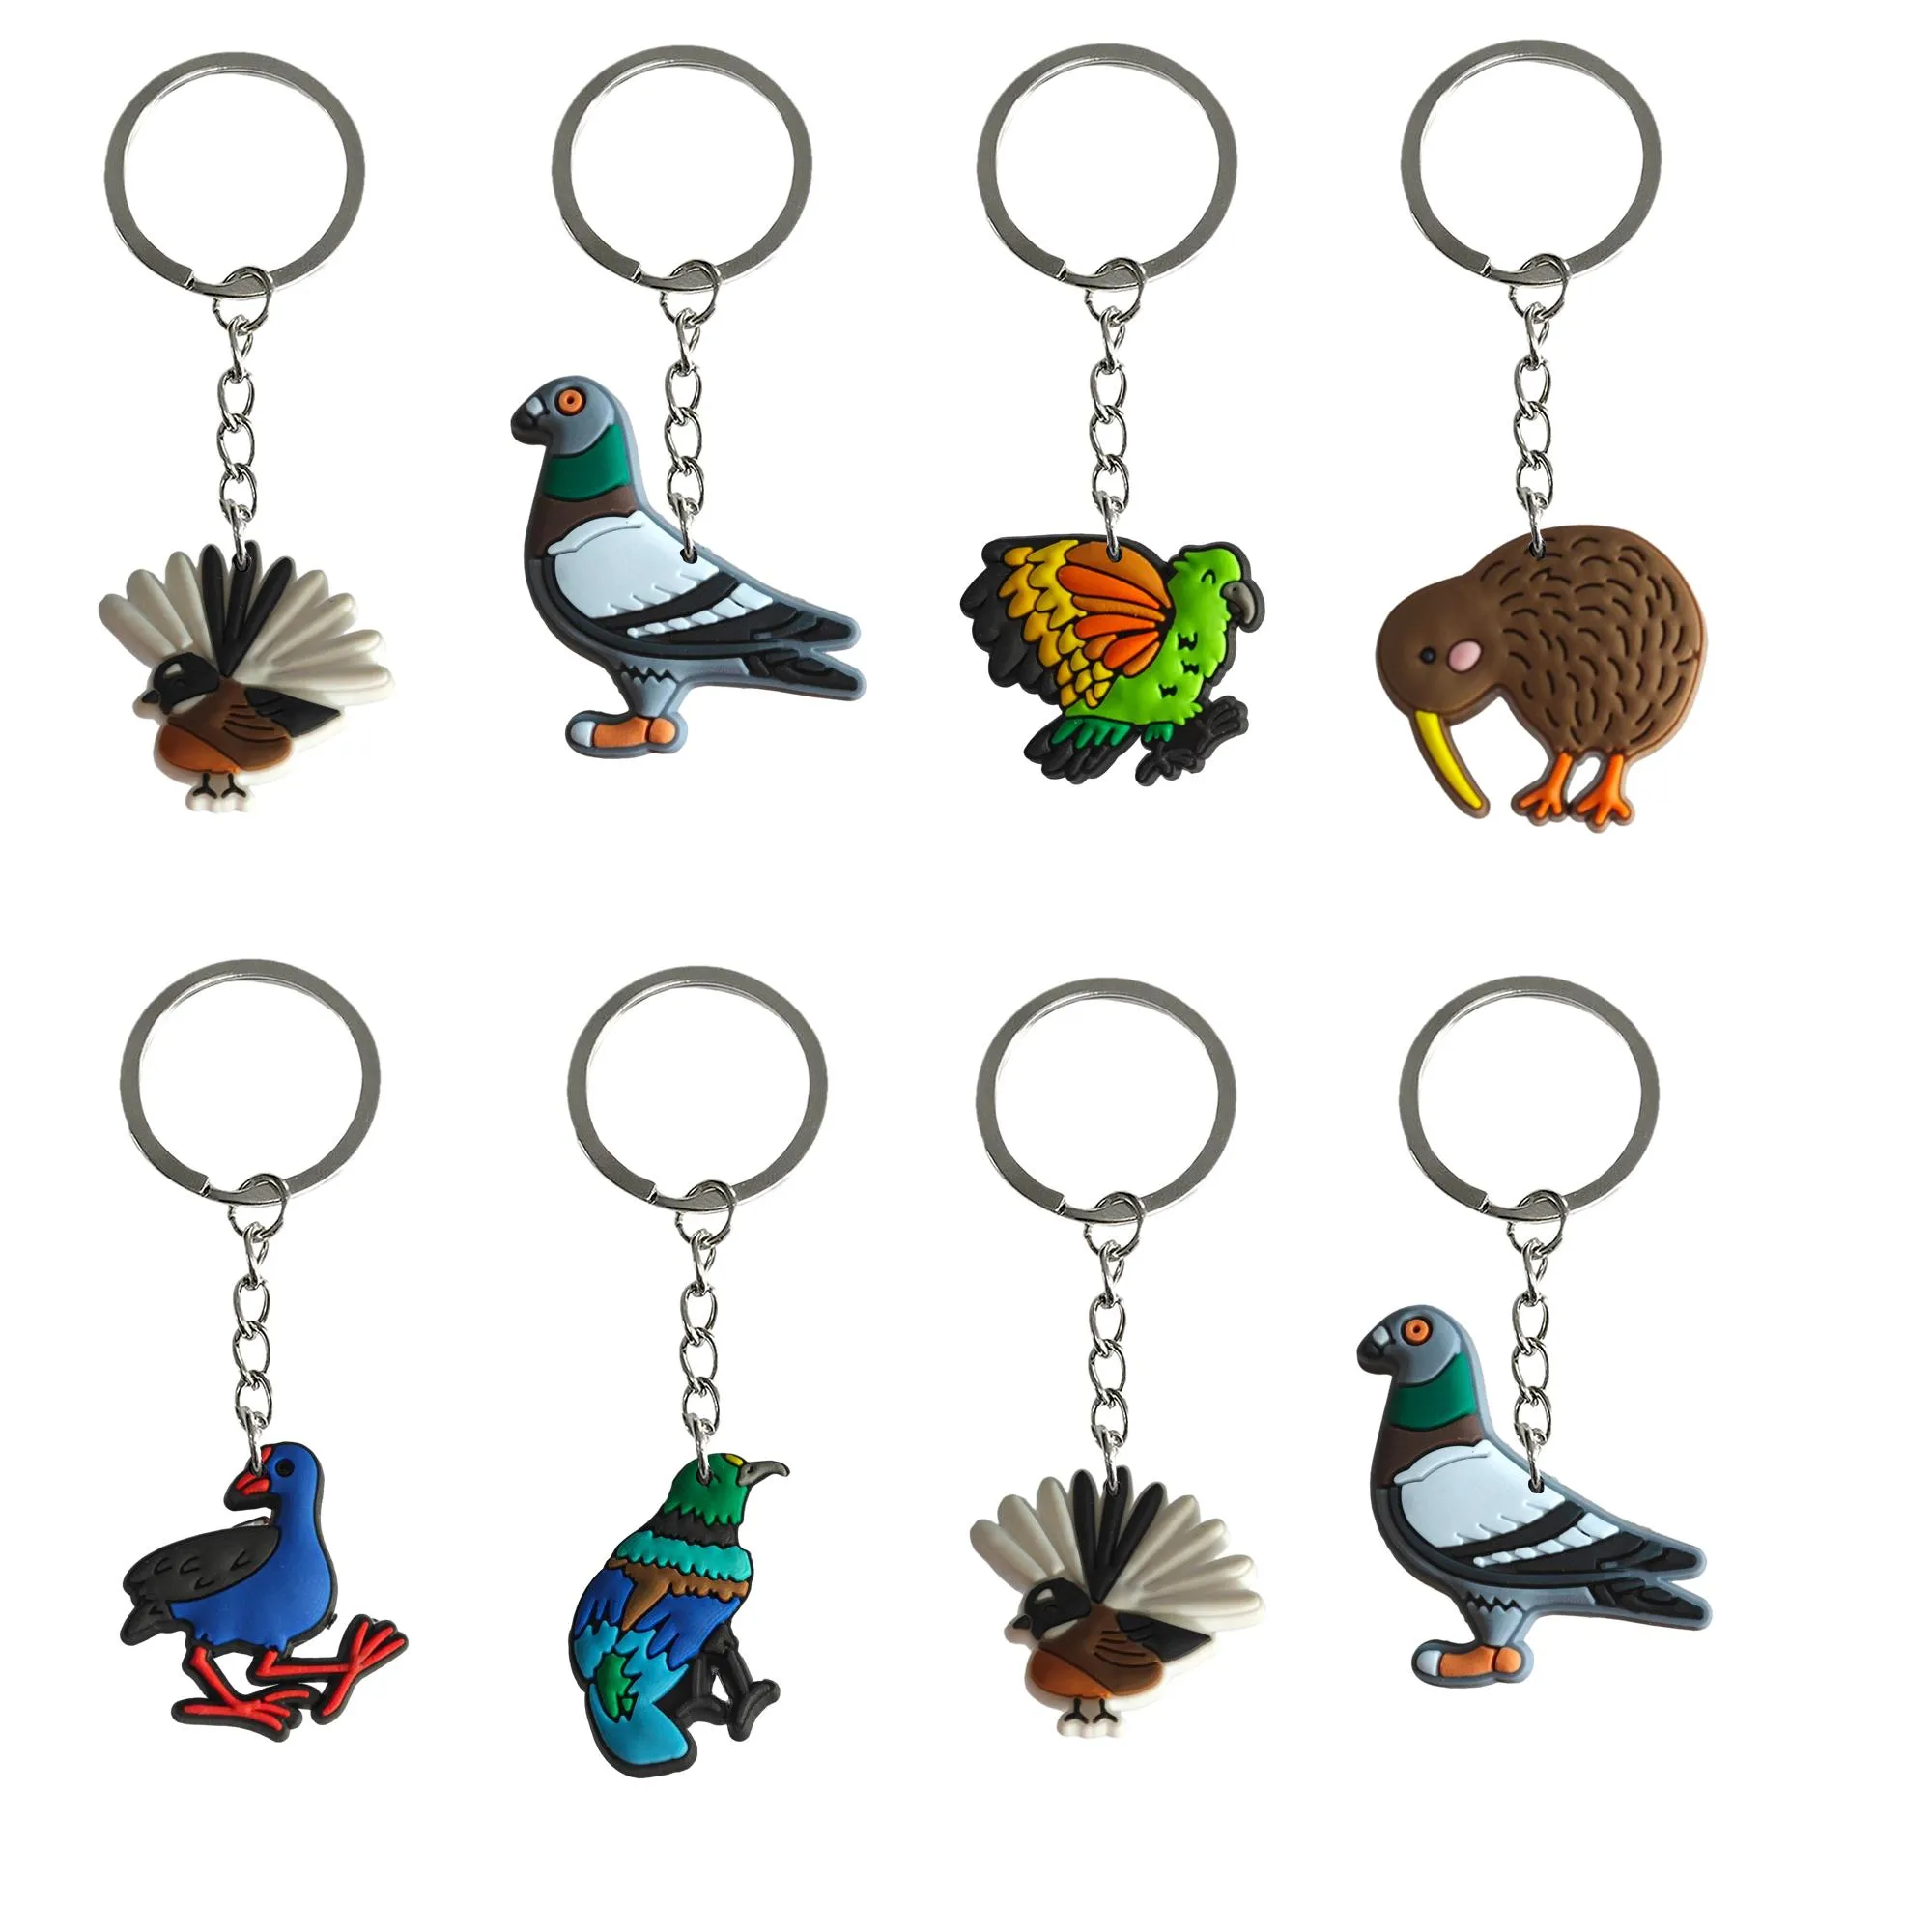 Chaves de chaves de pássaro de joias para sacos chaveiros de chaves favorecem os chaveiros de chaves de bolsa escolar adequada Acessórios da cadeia